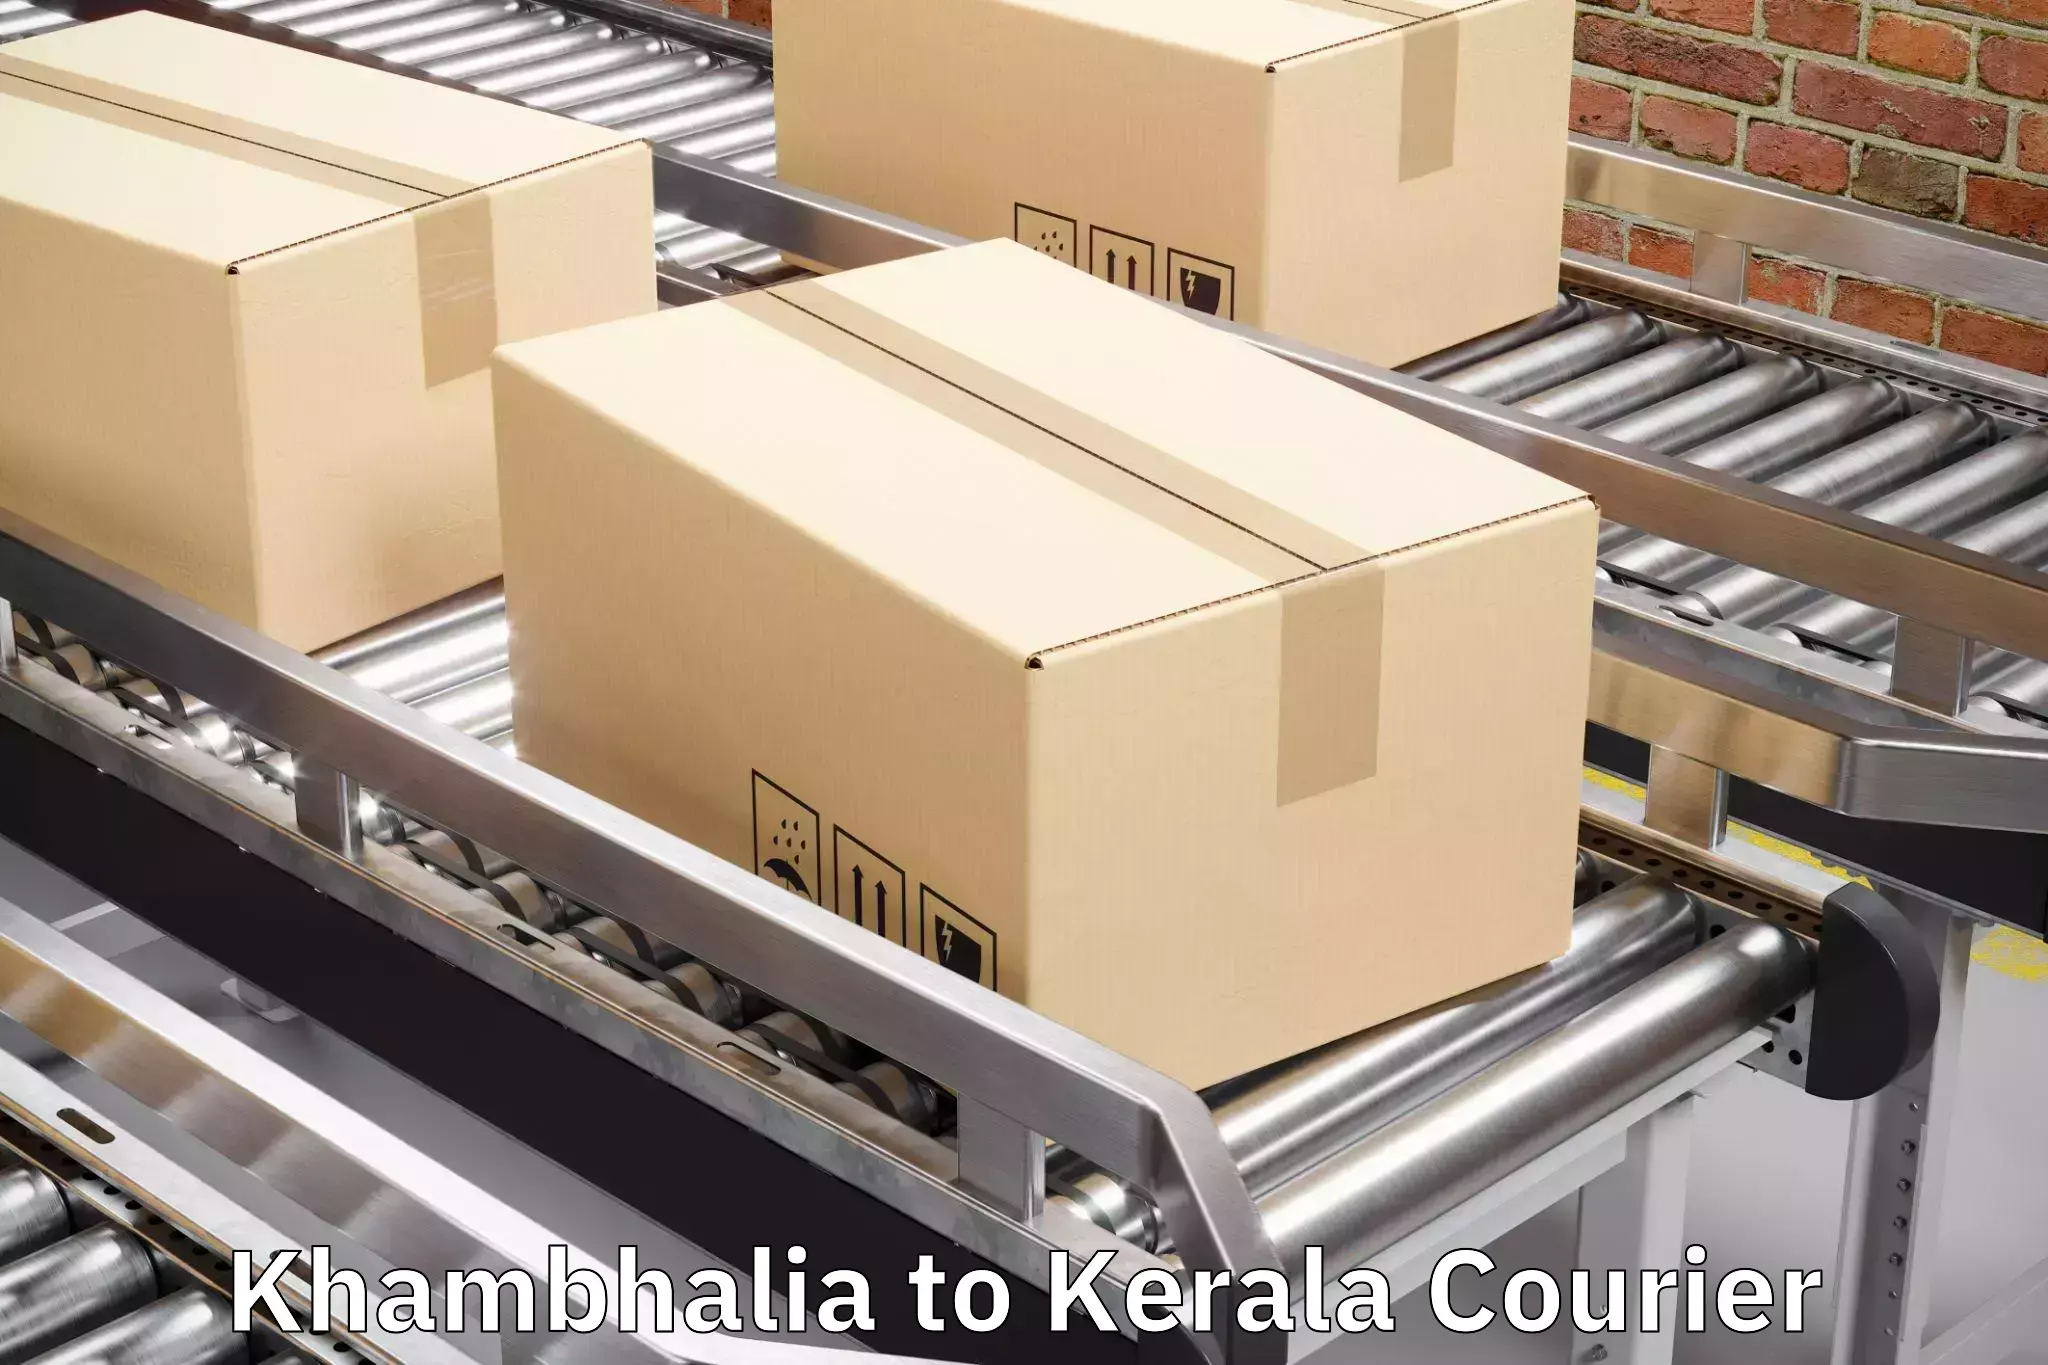 Luggage transport guidelines Khambhalia to Kalanjoor